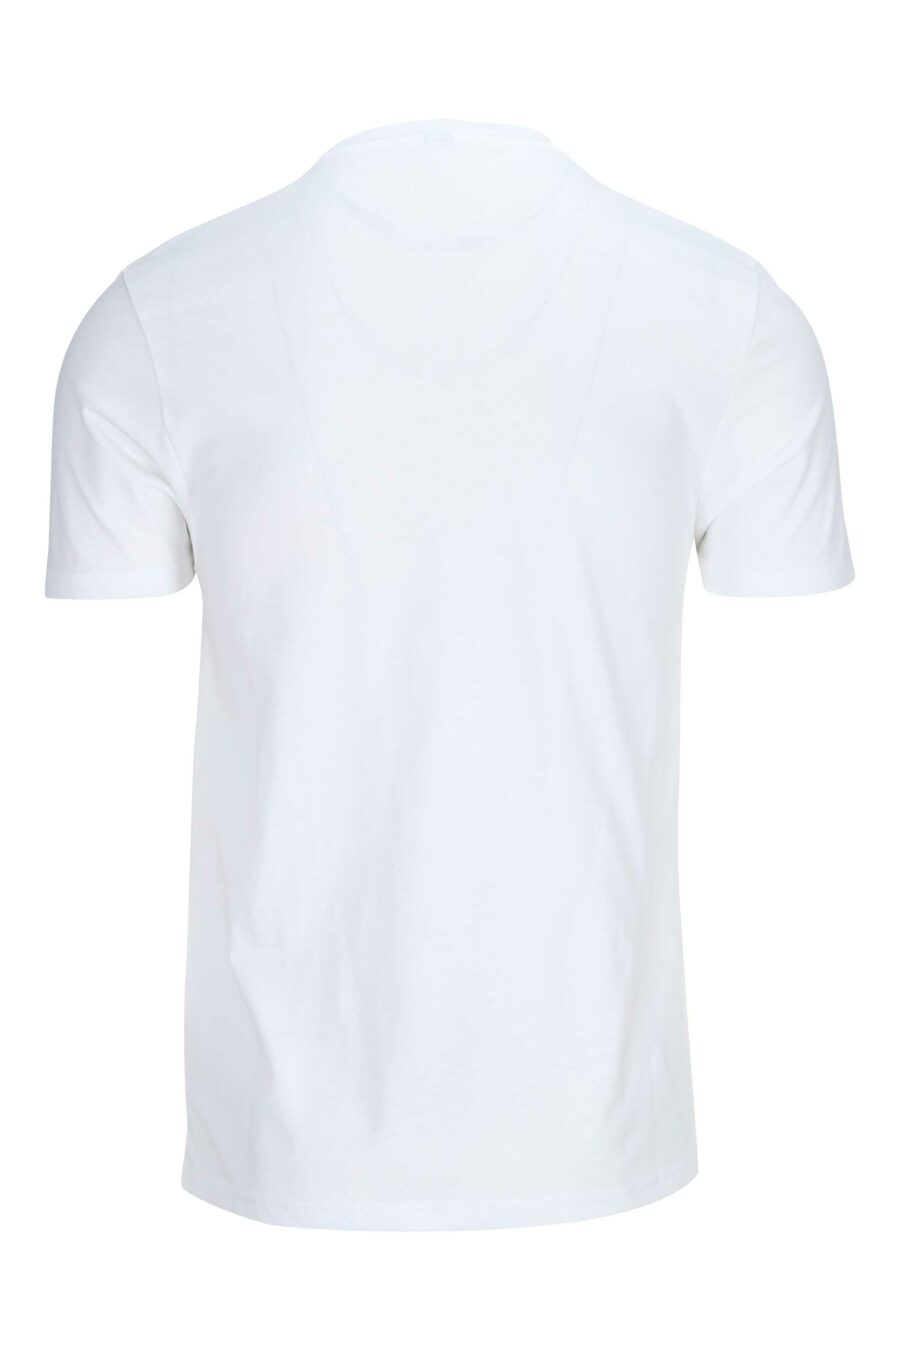 Camiseta blanca con logo en hombros en cinta - 667113024998 1